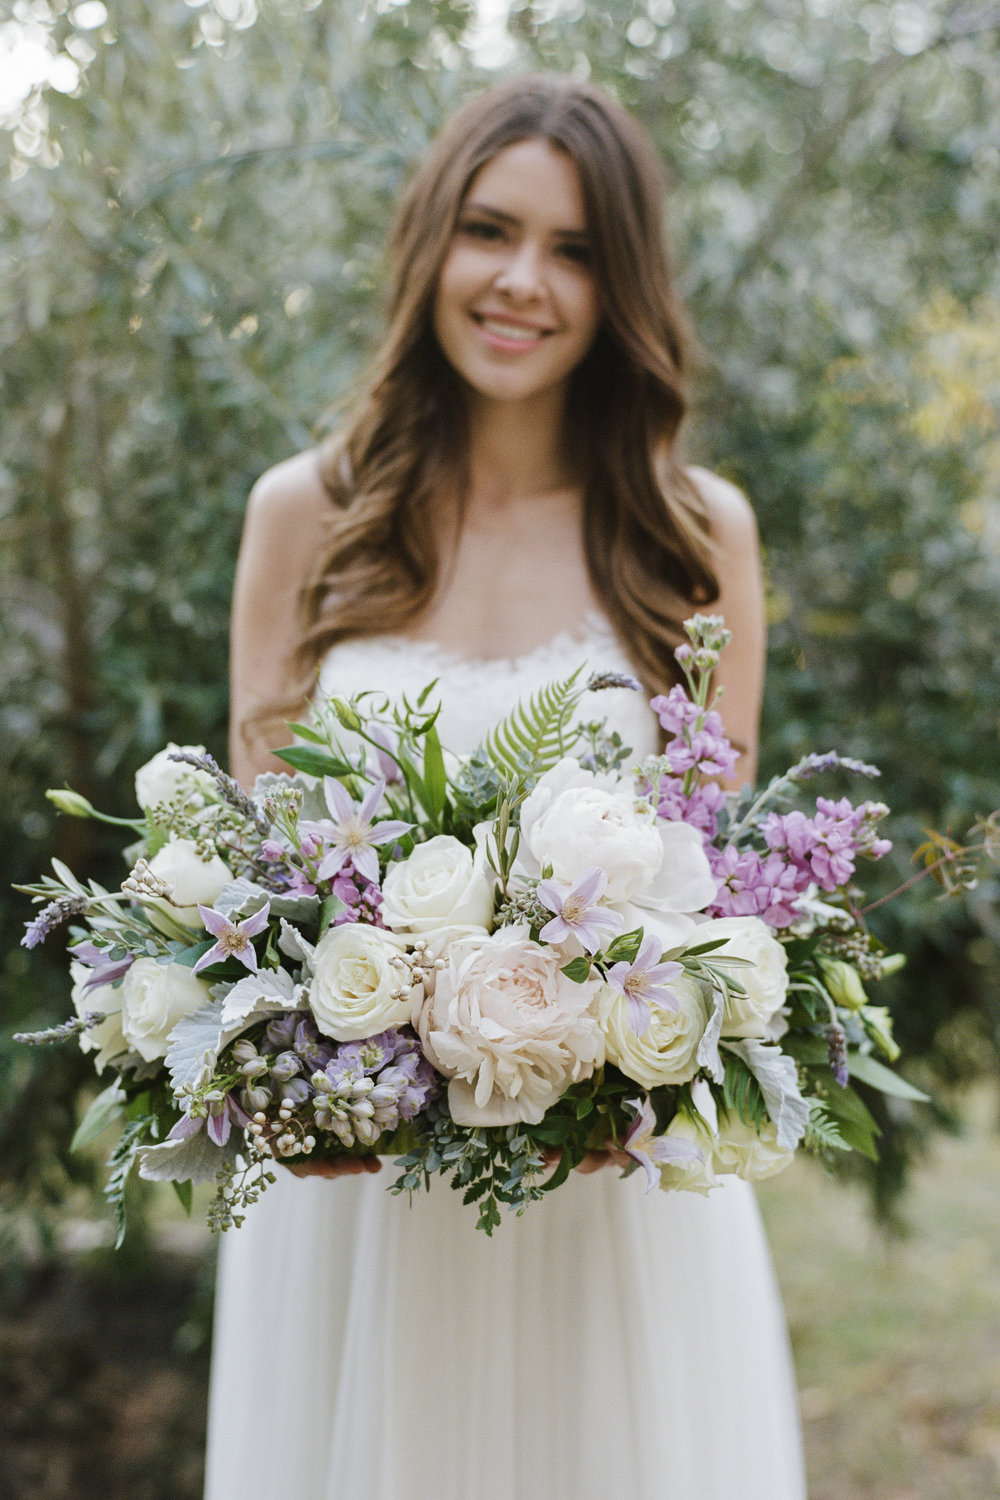 Violette-fleurs-roseville-sacramento-california-Flower-farm-inn-wedding-florist-spring-tablescape-blush-perples-lavender-ivory-bride.jpg